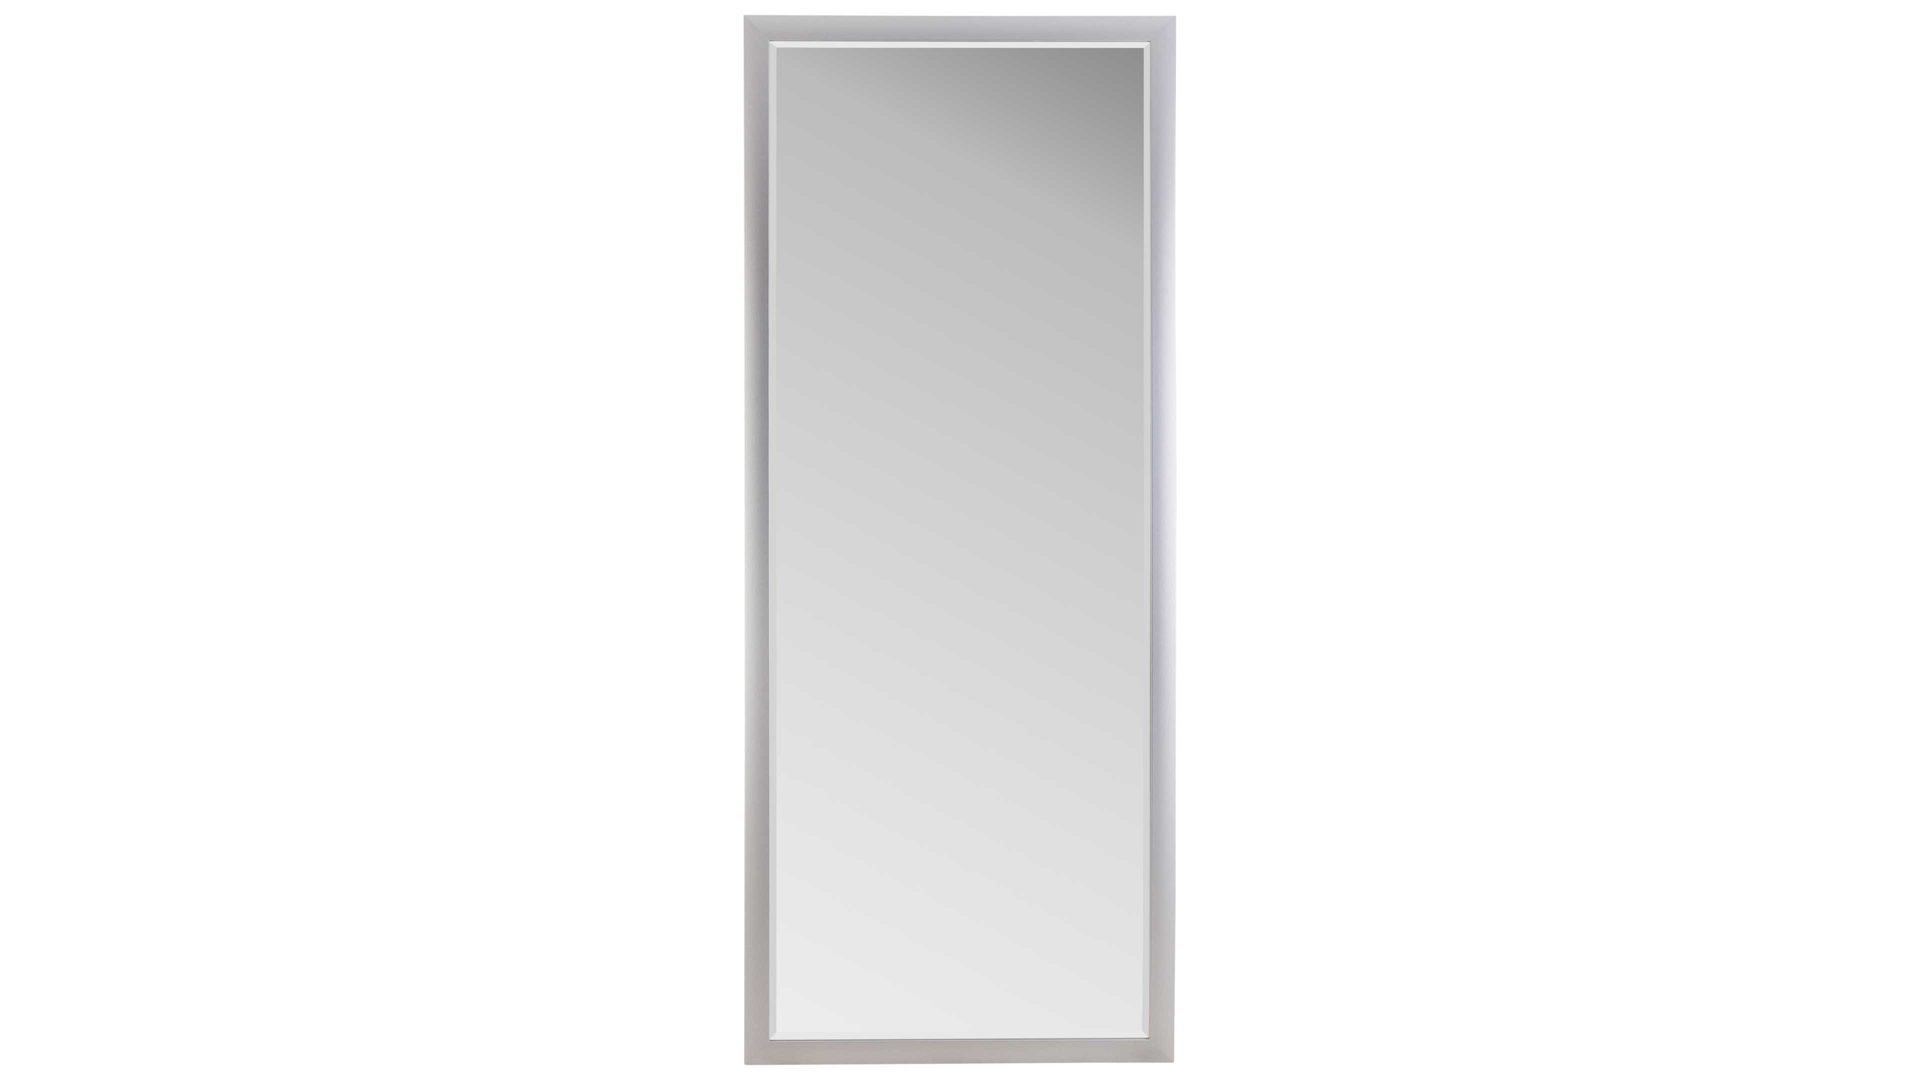 Wandspiegel Spiegelprofi aus Spiegel in Metallfarben Rahmenspiegel Vegas alufarbener Rahmen – ca. 66 x 166 cm